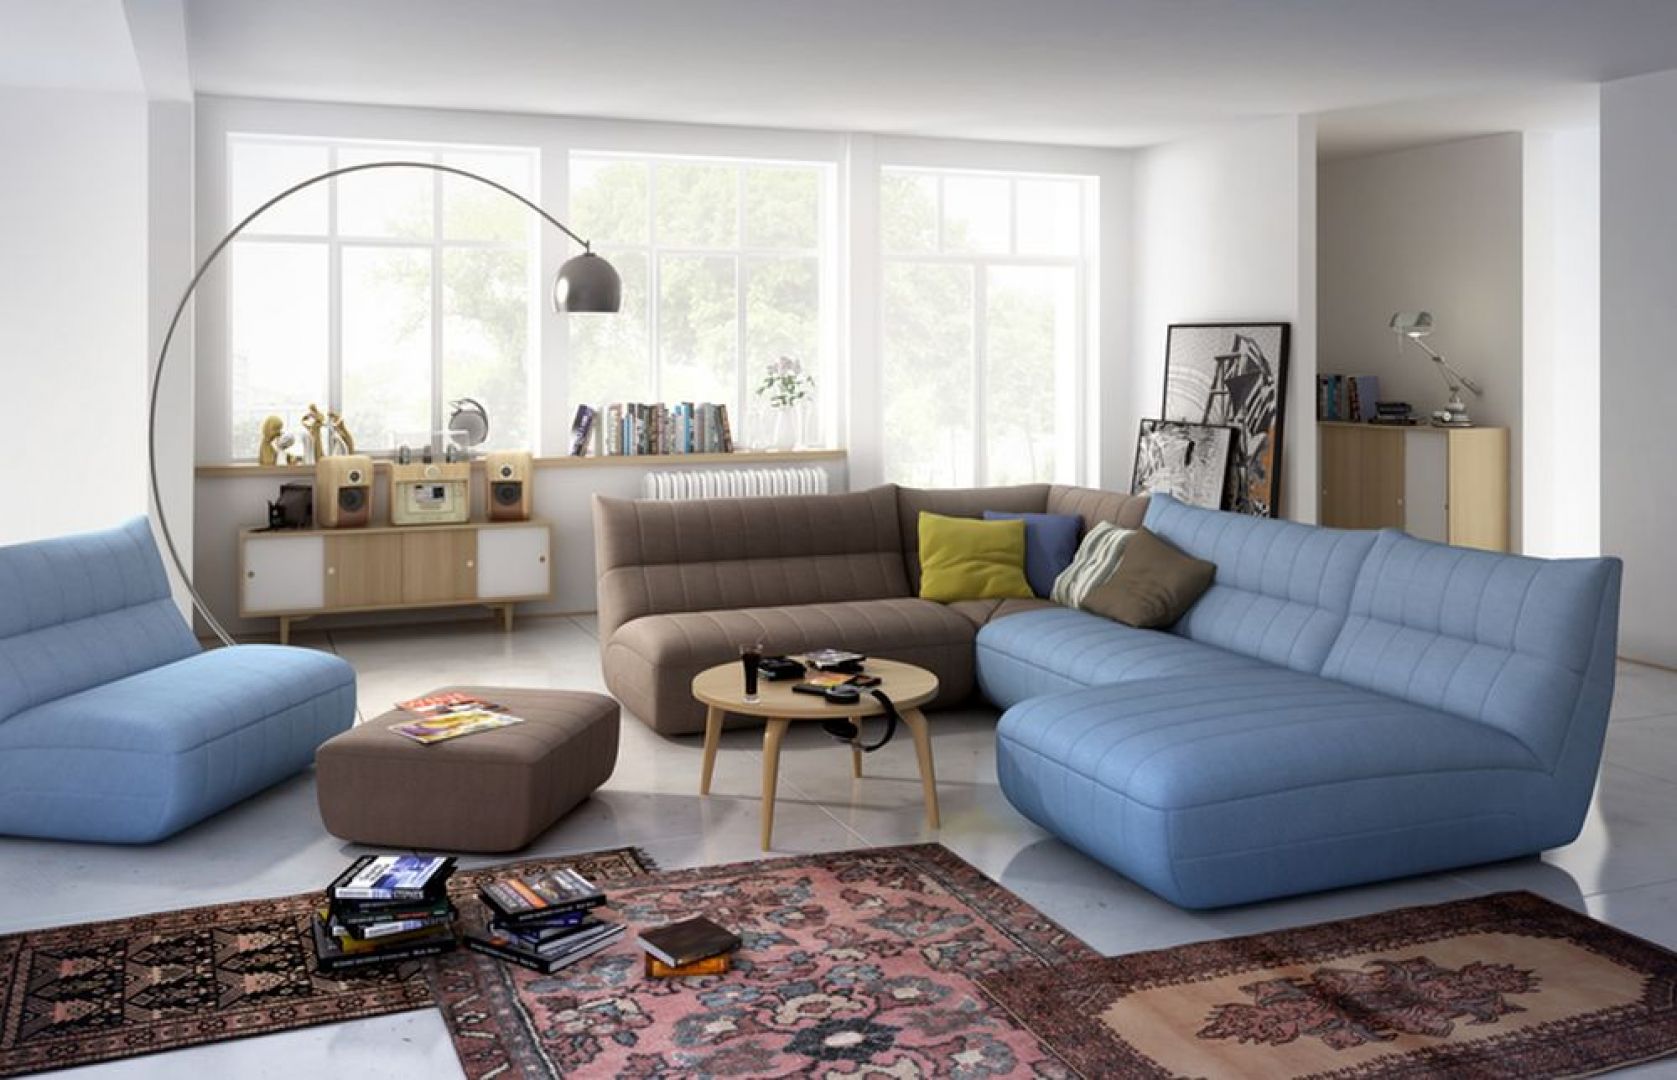 Wygodna sofa to podstawa udanej domówki. Najlepiej sprawdzą się meble meble modułowe. Fot. Salony Agata